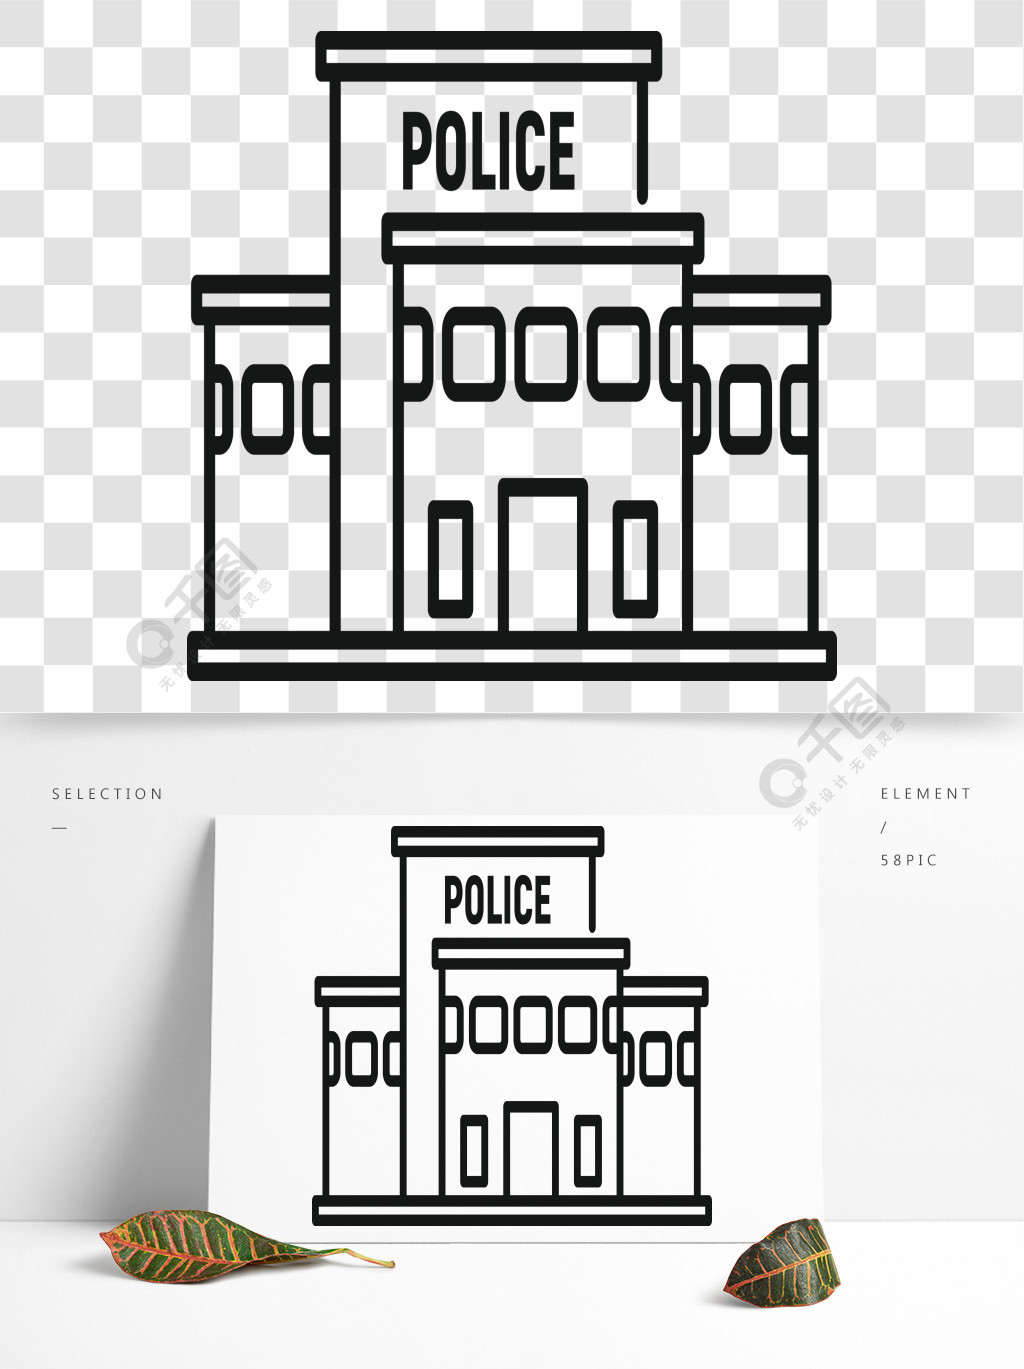 警察局大楼图标概述警察局大厦在白色背景网络设计的传染媒介象隔绝的